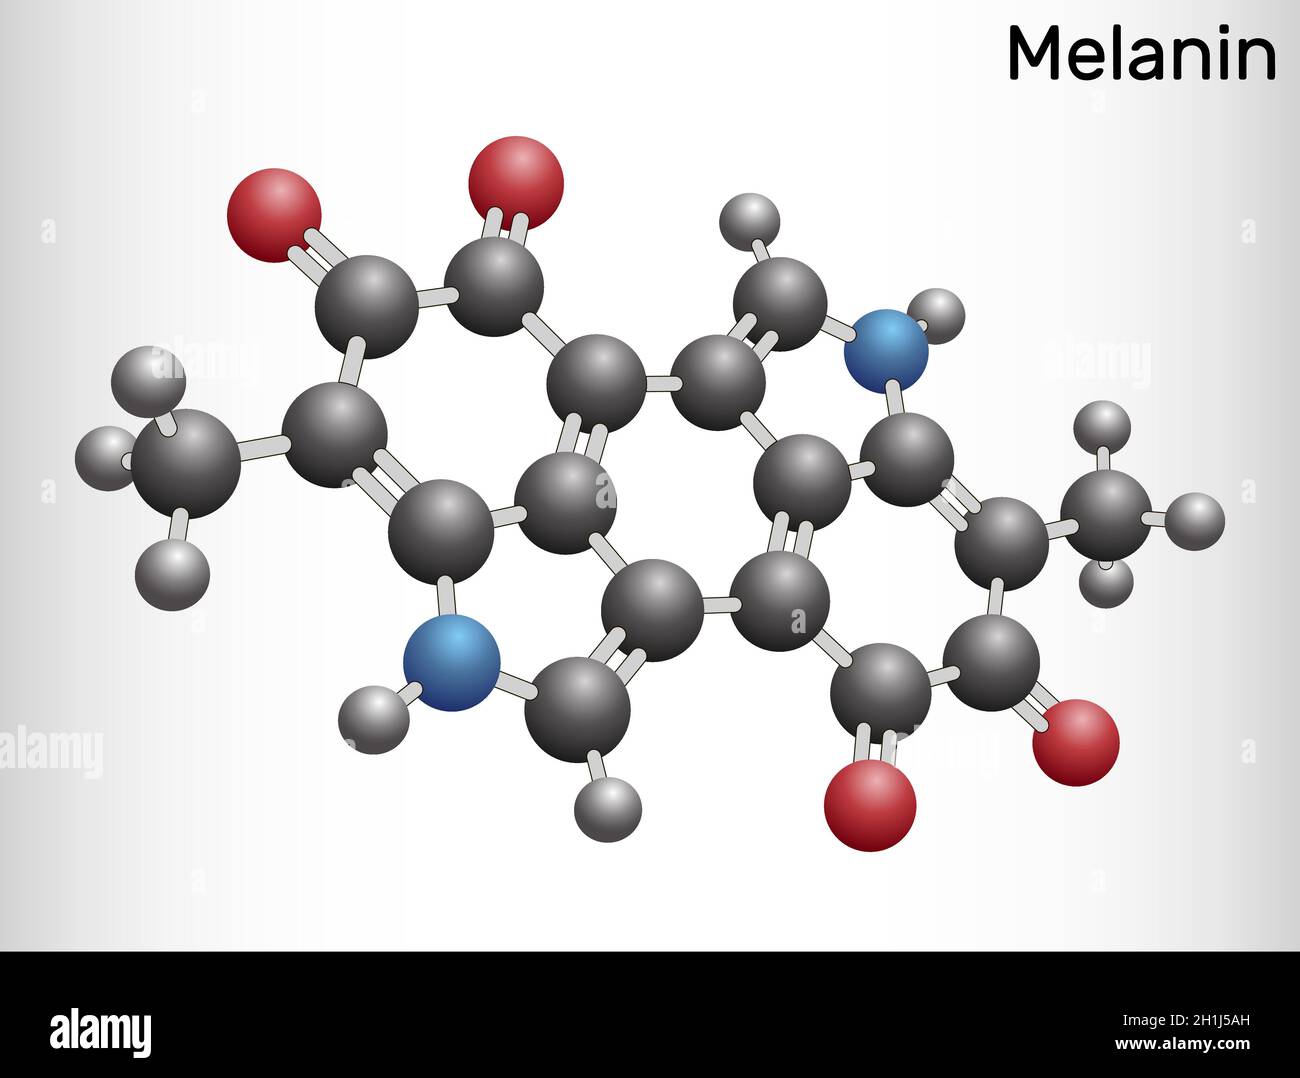 Molecola di melanina. Polimeri di derivati della tirosina che si trovano  nella pelle (pigmentazione cutanea) e nei capelli e che causano l'oscurità.  Modello con sfera e bastone. Vettore i Immagine e Vettoriale -